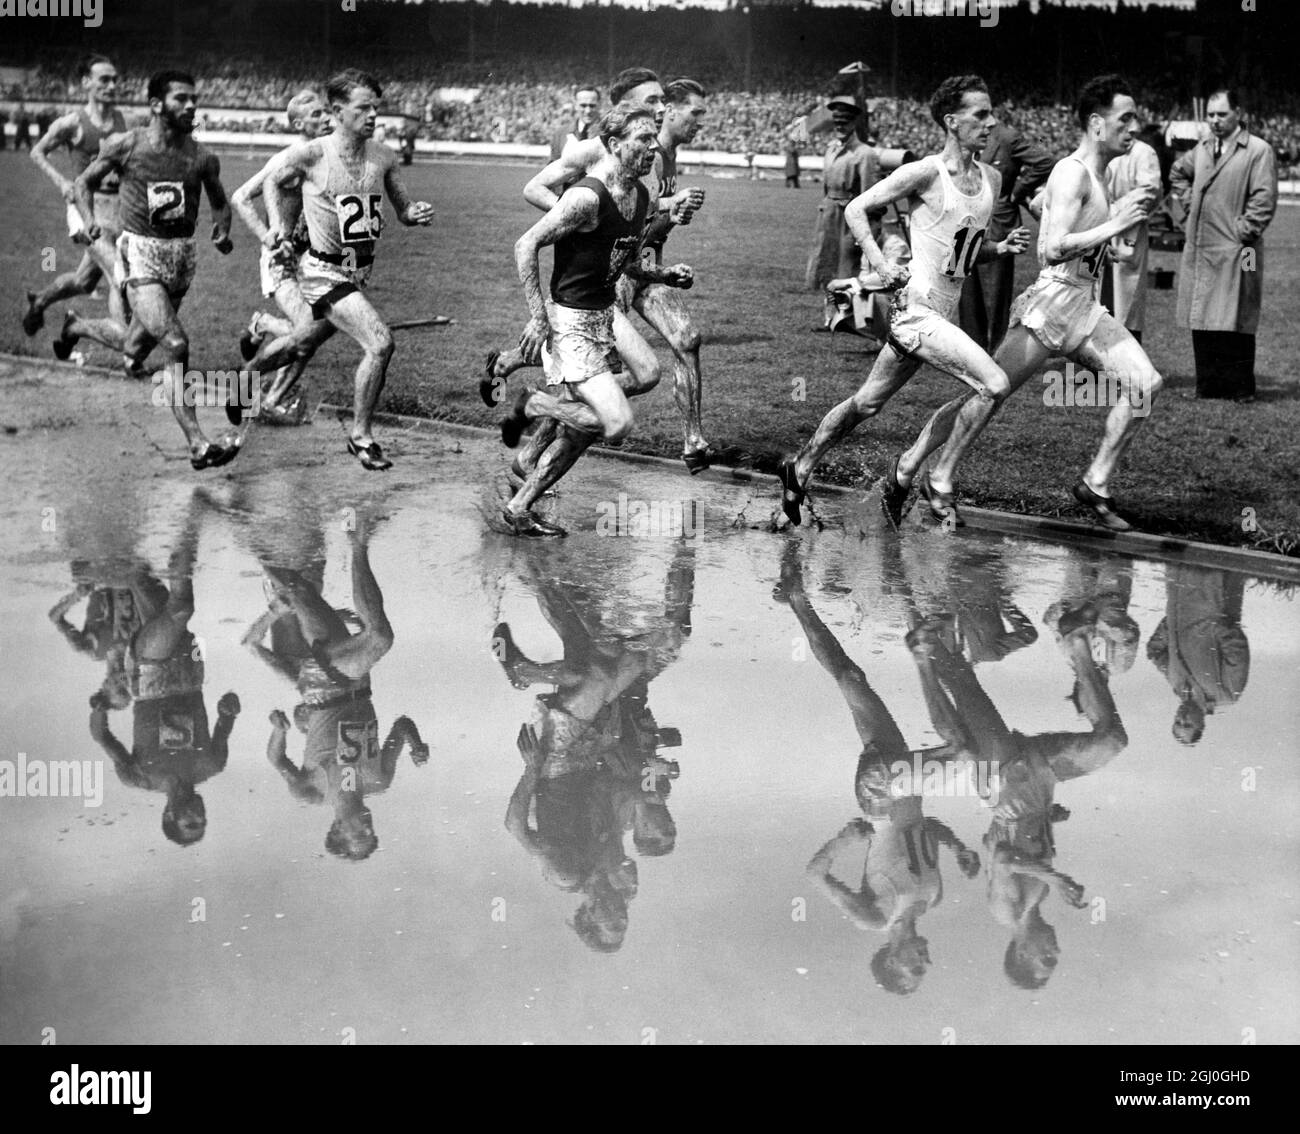 Une grosse baisse a rendu les conditions difficiles pour les concurrents le dernier jour des Jeux britanniques qui se sont tenus à White City. Voici le champ vu lors de l'événement One Mile. 2 juin 1952 Banque D'Images